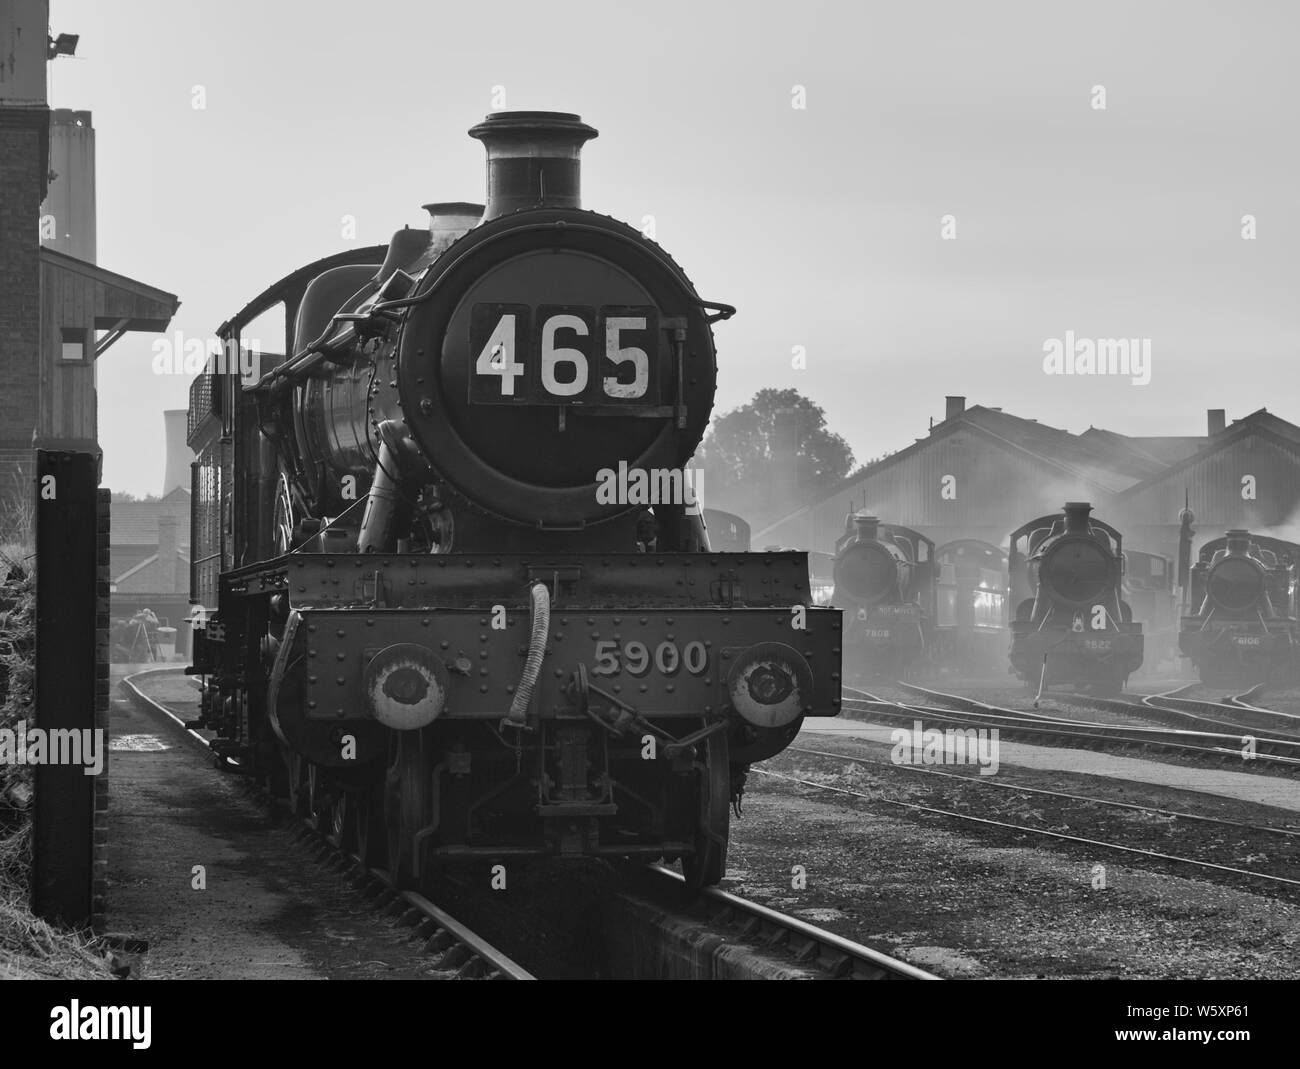 Ricreazione nostalgica di una scena del capannone ferroviario dell'era del vapore, in bianco e nero, enfatizzando i giorni passati della gloria. Foto Stock